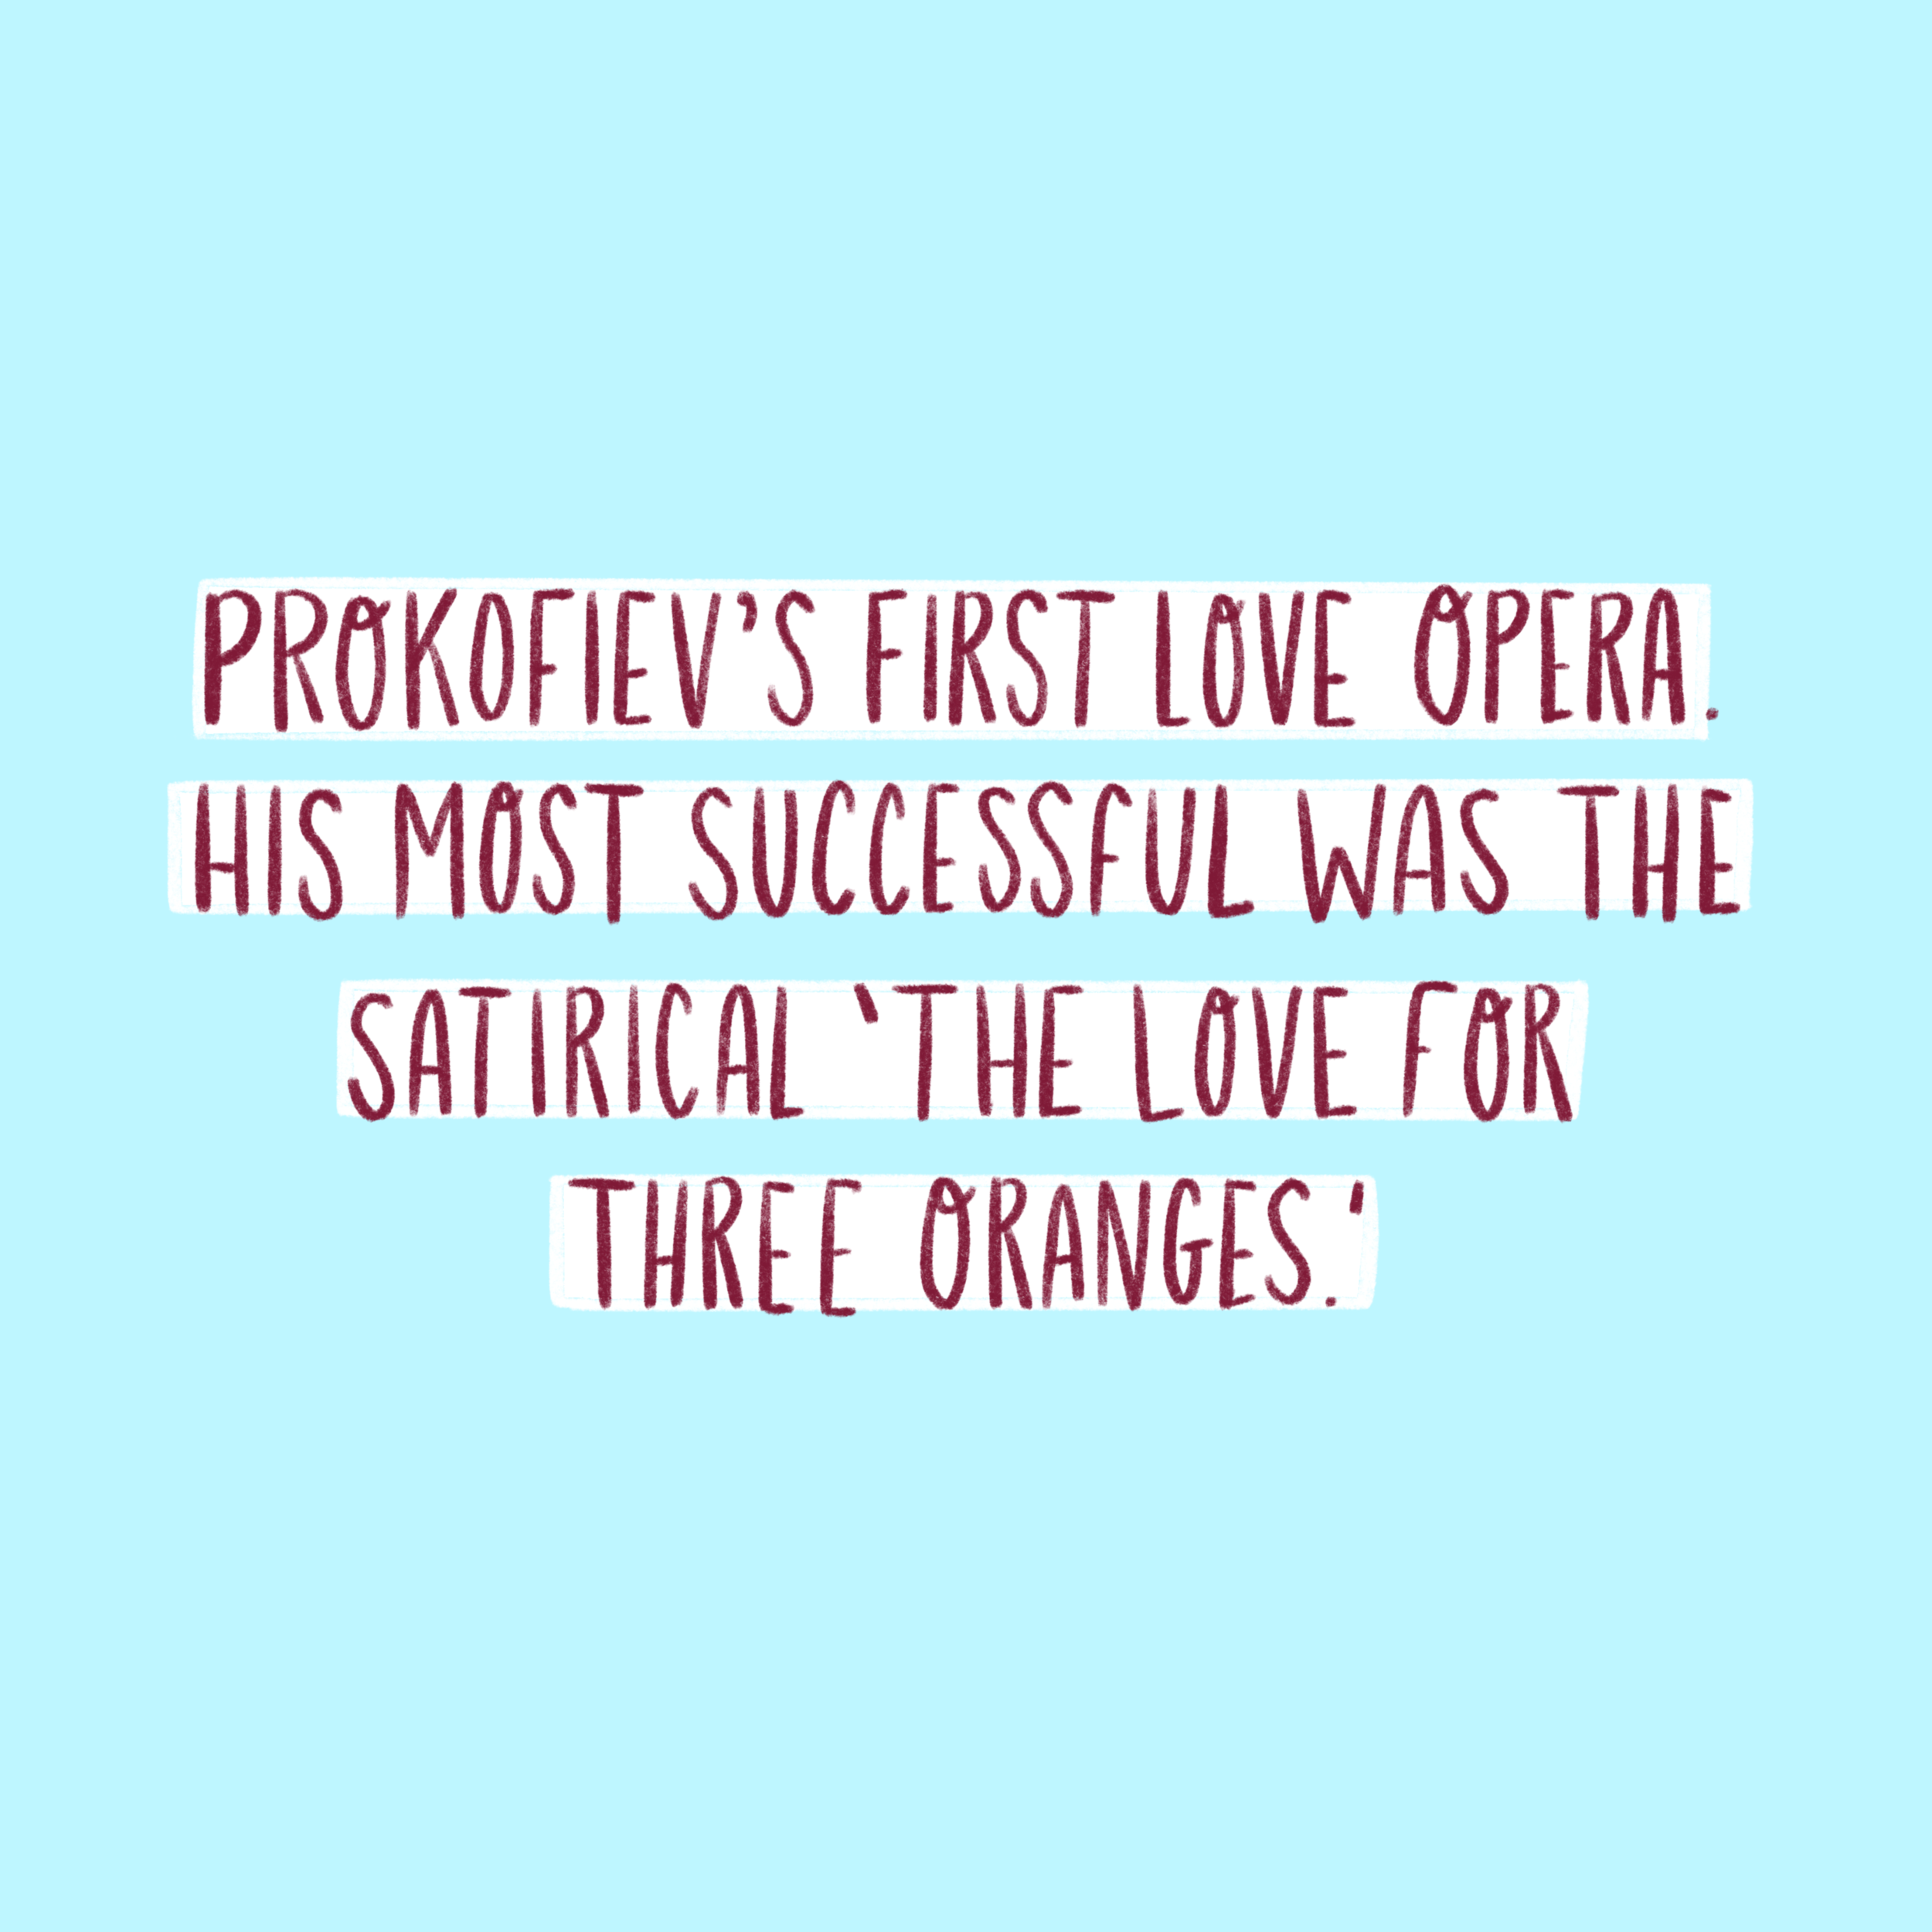 Prokofiev 4.png